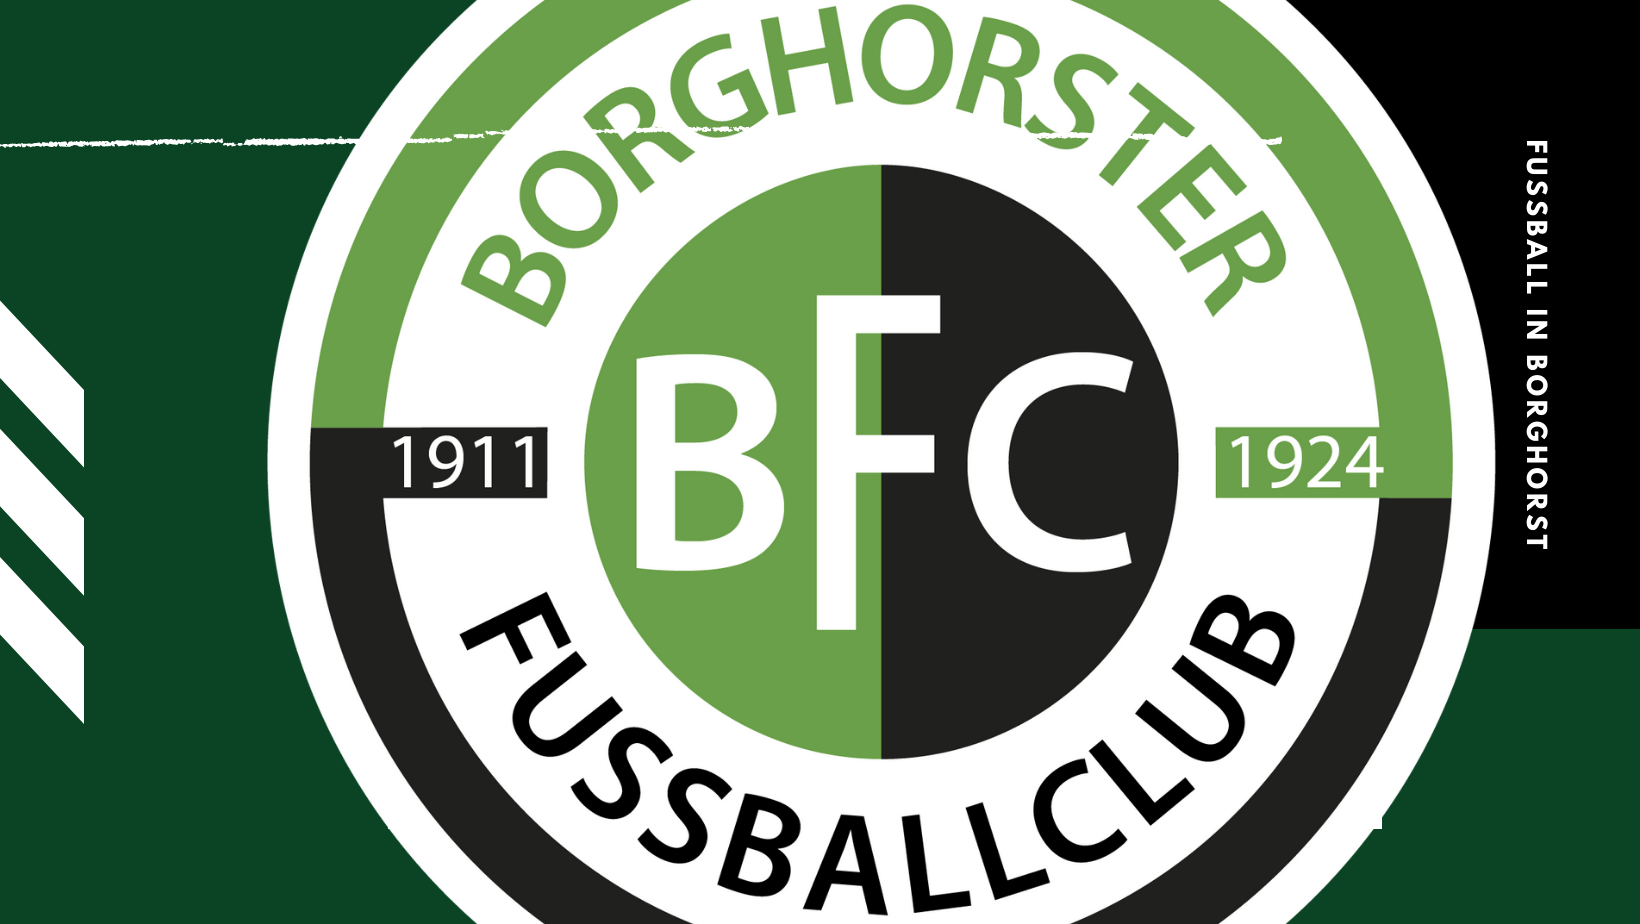 Satzung | Borghorster FC 1911/1924 e.V.